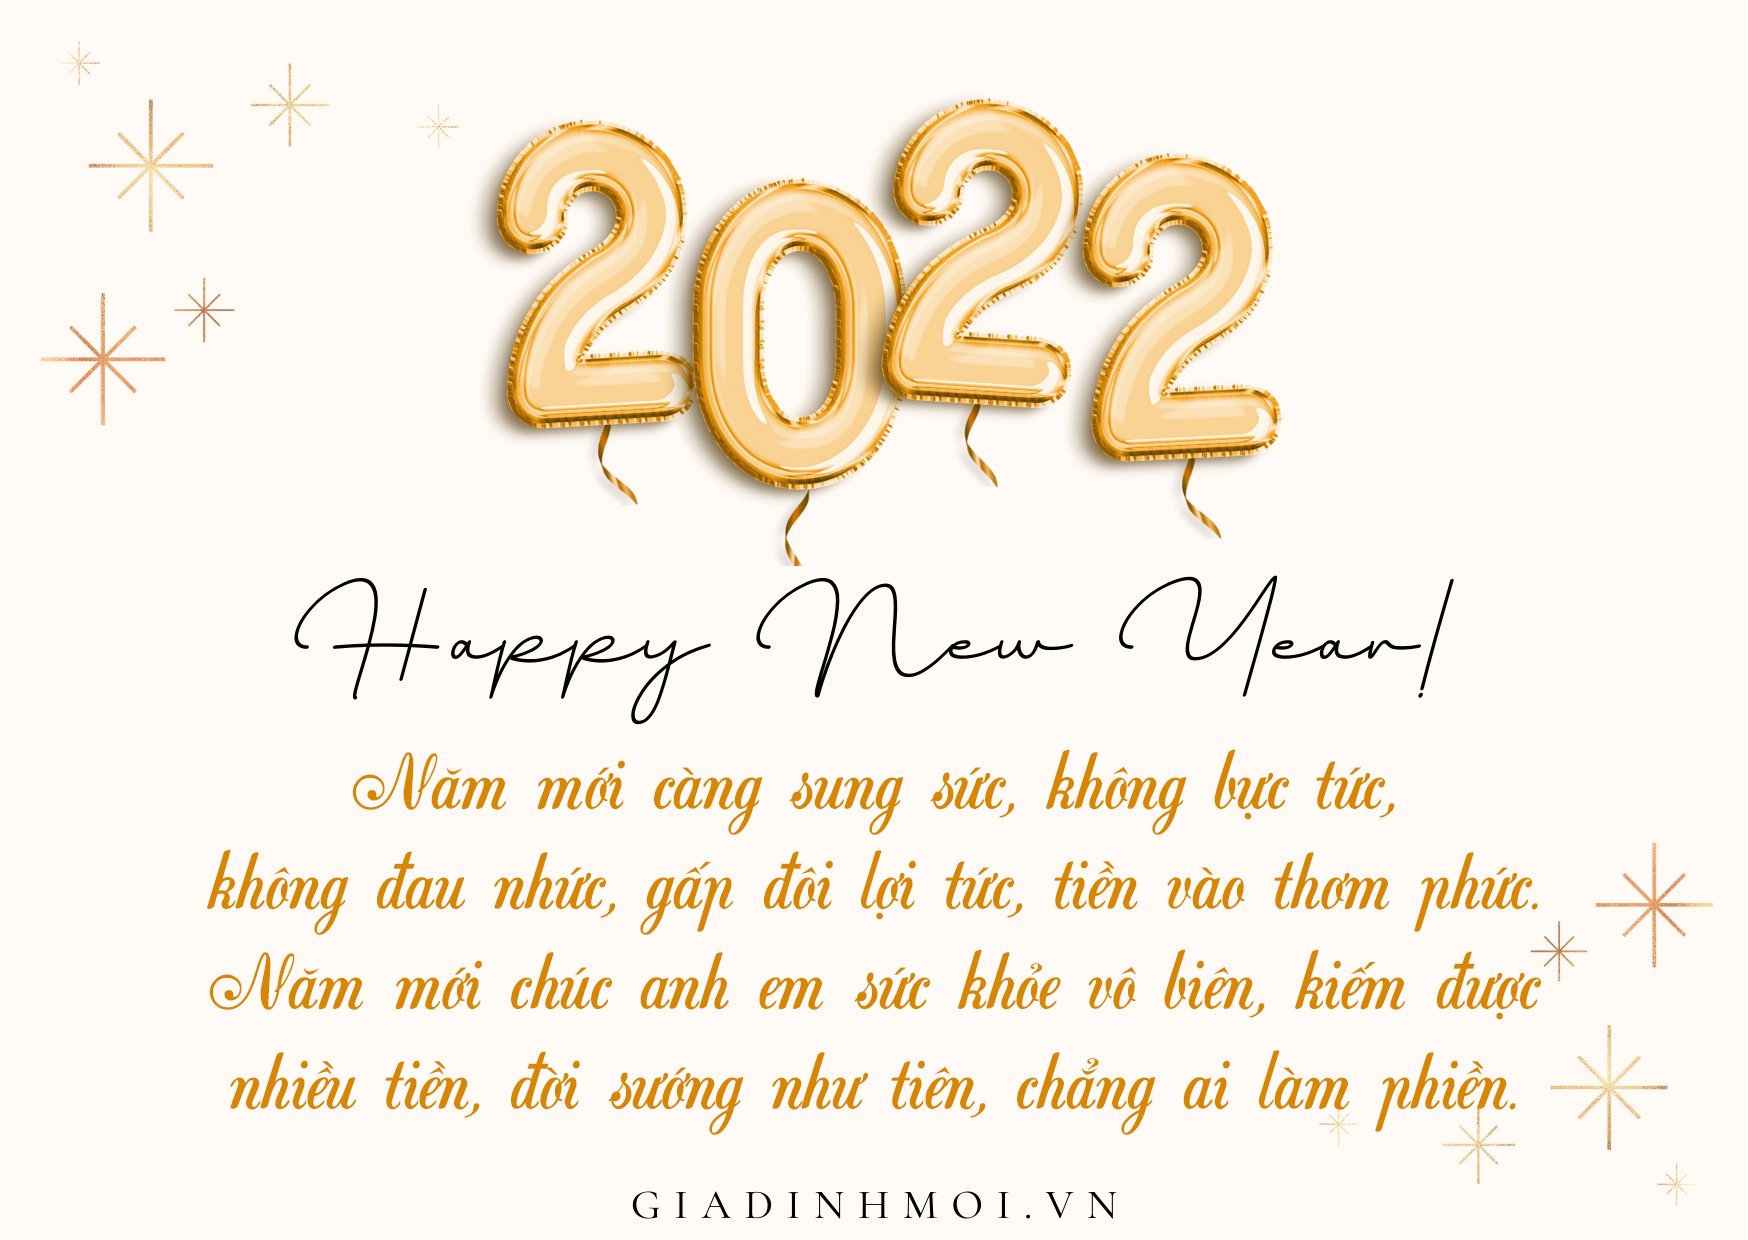 Tuyển tập thiệp chúc mừng năm mới 2022 đẹp, độc, ý nghĩa tặng mọi người 0